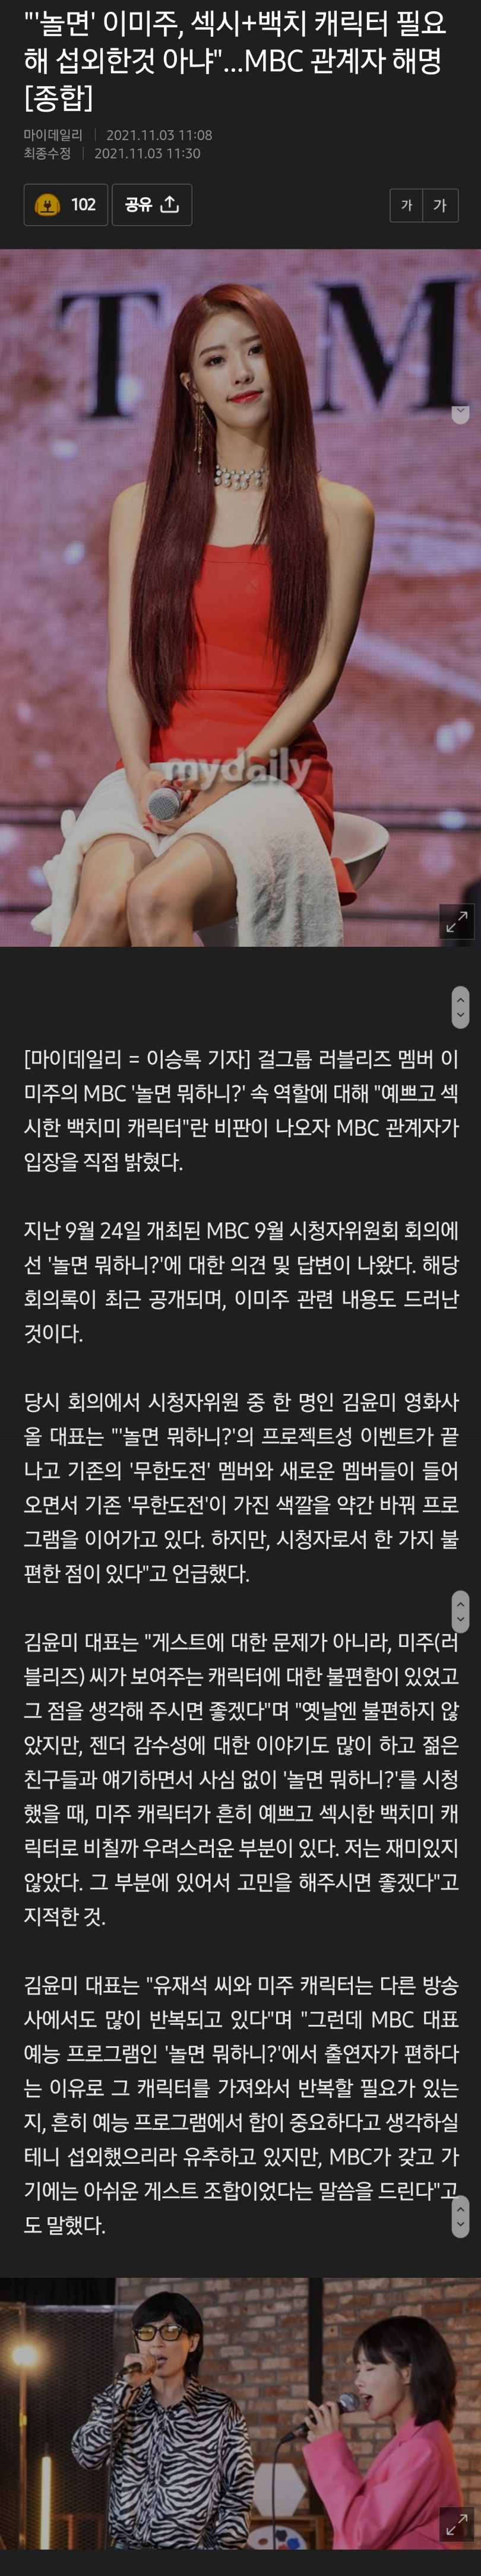 "'놀면' 이미주, 섹시+백치 캐릭터 필요해 섭외한것 아냐"…MBC 관계자 해명